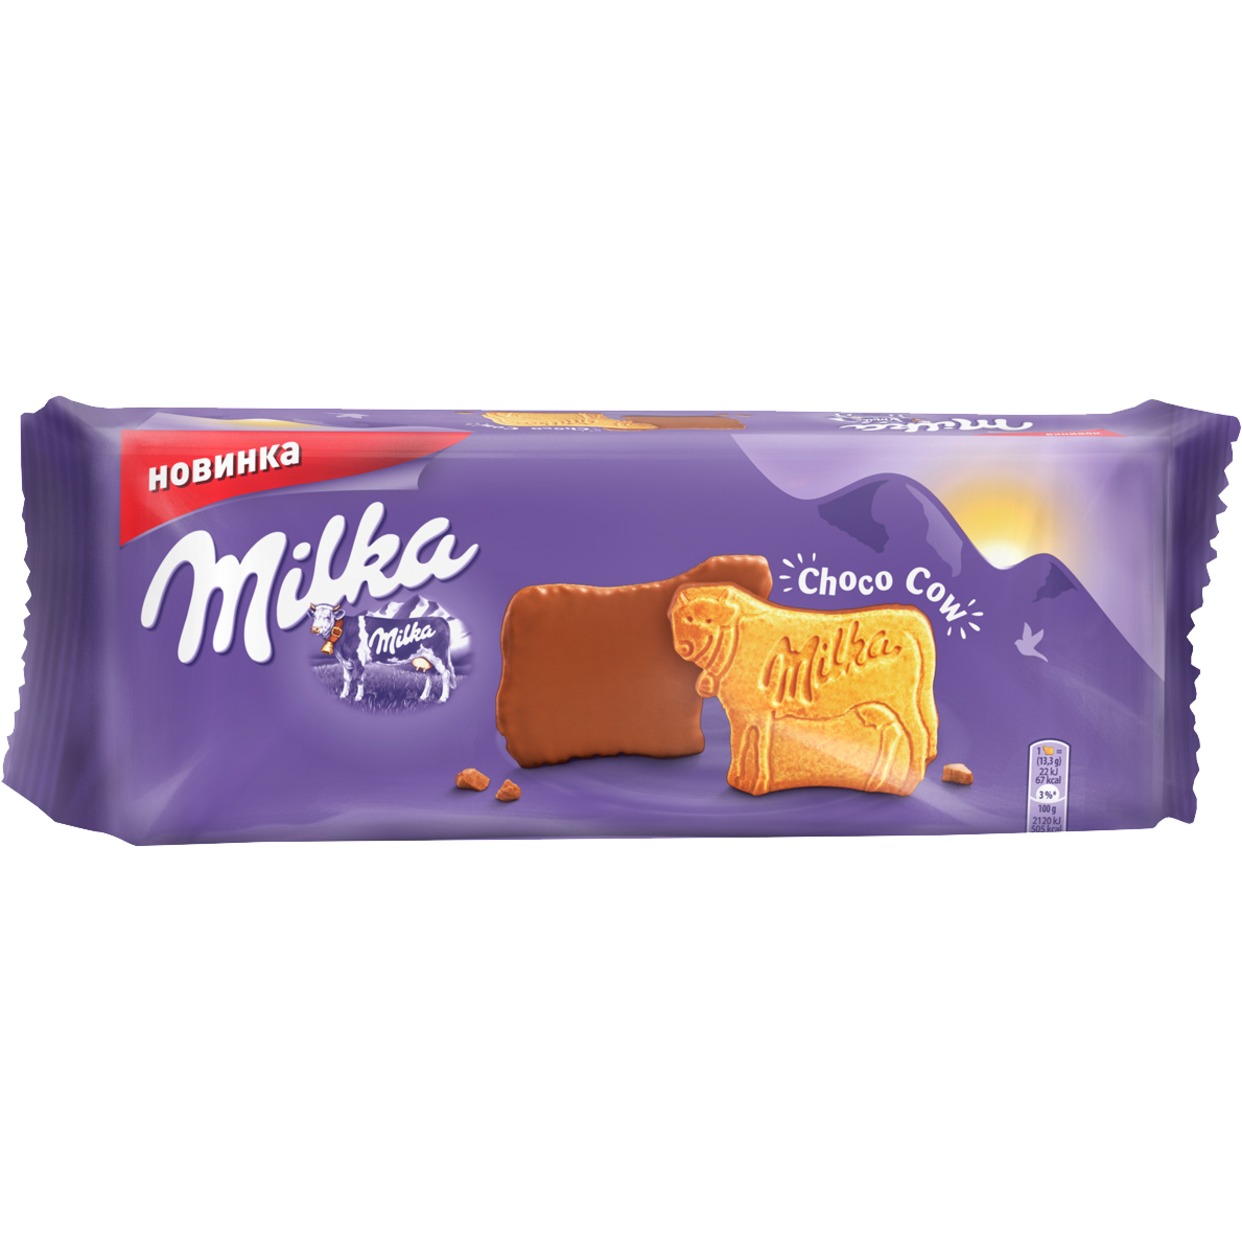 Печенье, покрытое молочным шоколадом "Милка", 200г по акции в Пятерочке